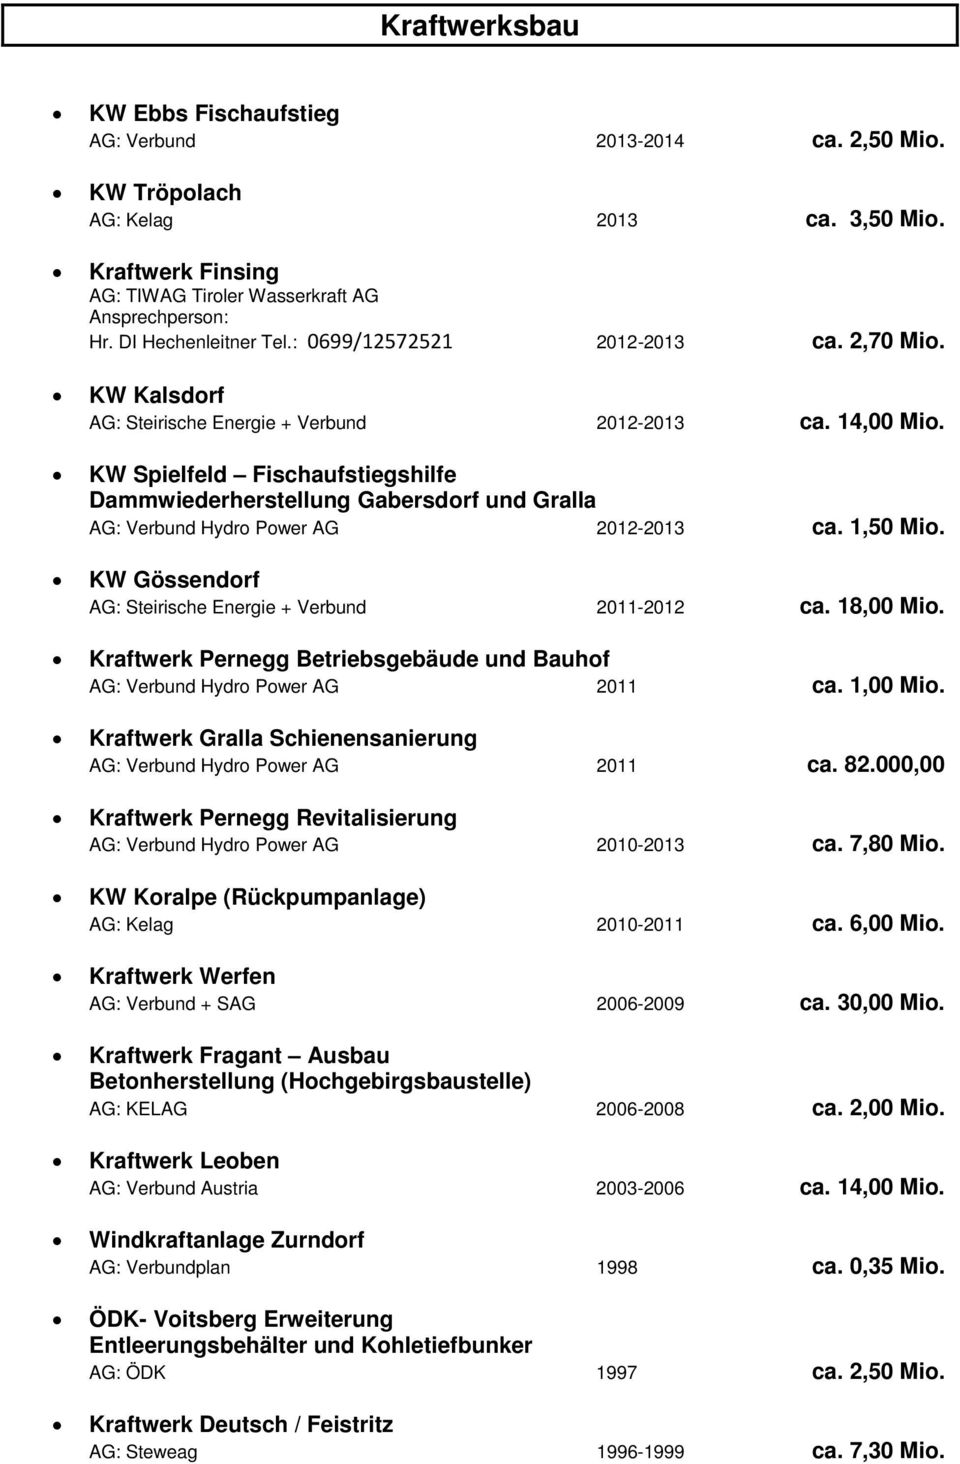 KW Spielfeld Fischaufstiegshilfe Dammwiederherstellung Gabersdorf und Gralla AG: Verbund Hydro Power AG 2012-2013 ca. 1,50 Mio. KW Gössendorf AG: Steirische Energie + Verbund 2011-2012 ca. 18,00 Mio.